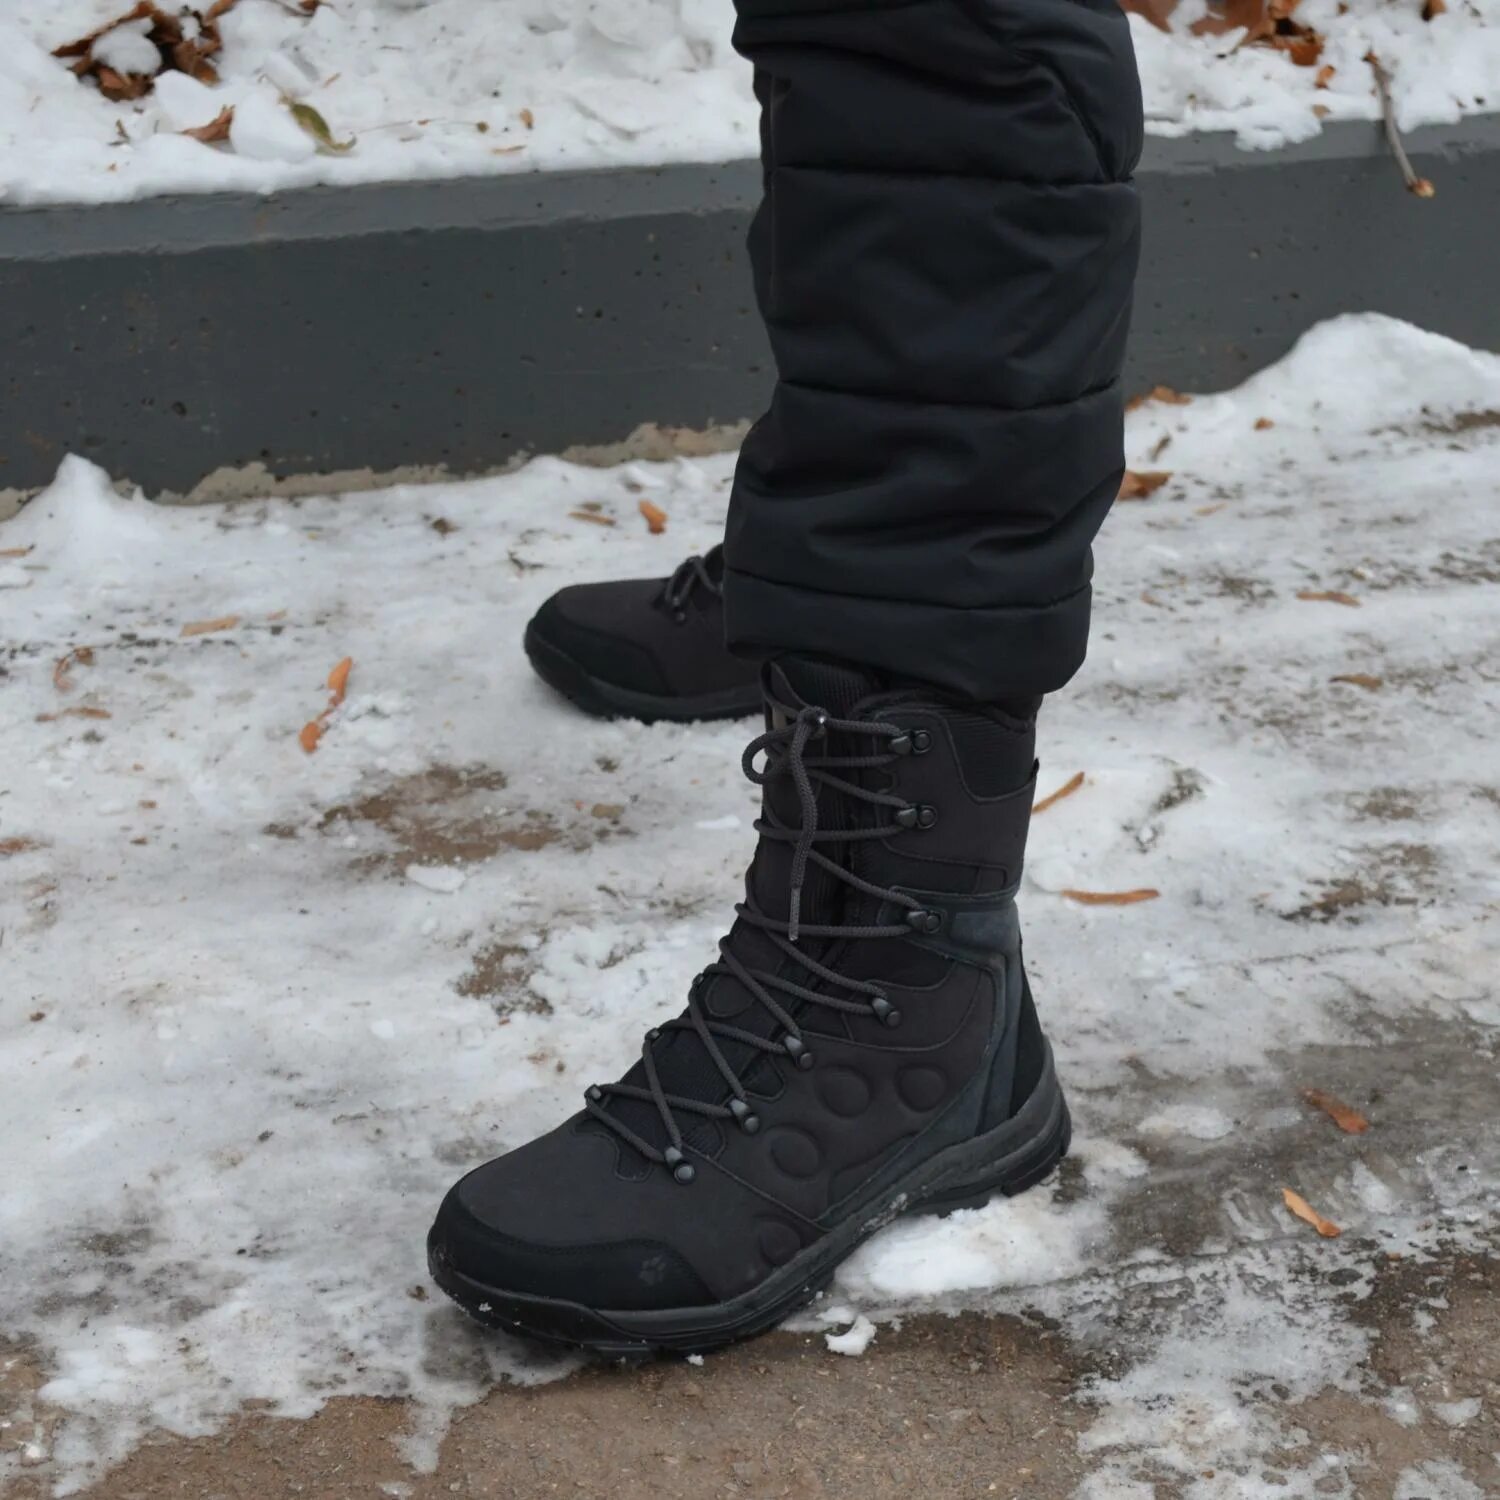 Теплые легкие зимние. Ботинки мужские Glacier Bay High. Зимние ботинки Jack Wolfskin Winterland. Тёплая зимняя обувь мужская. Самые теплые зимние ботинки мужские.